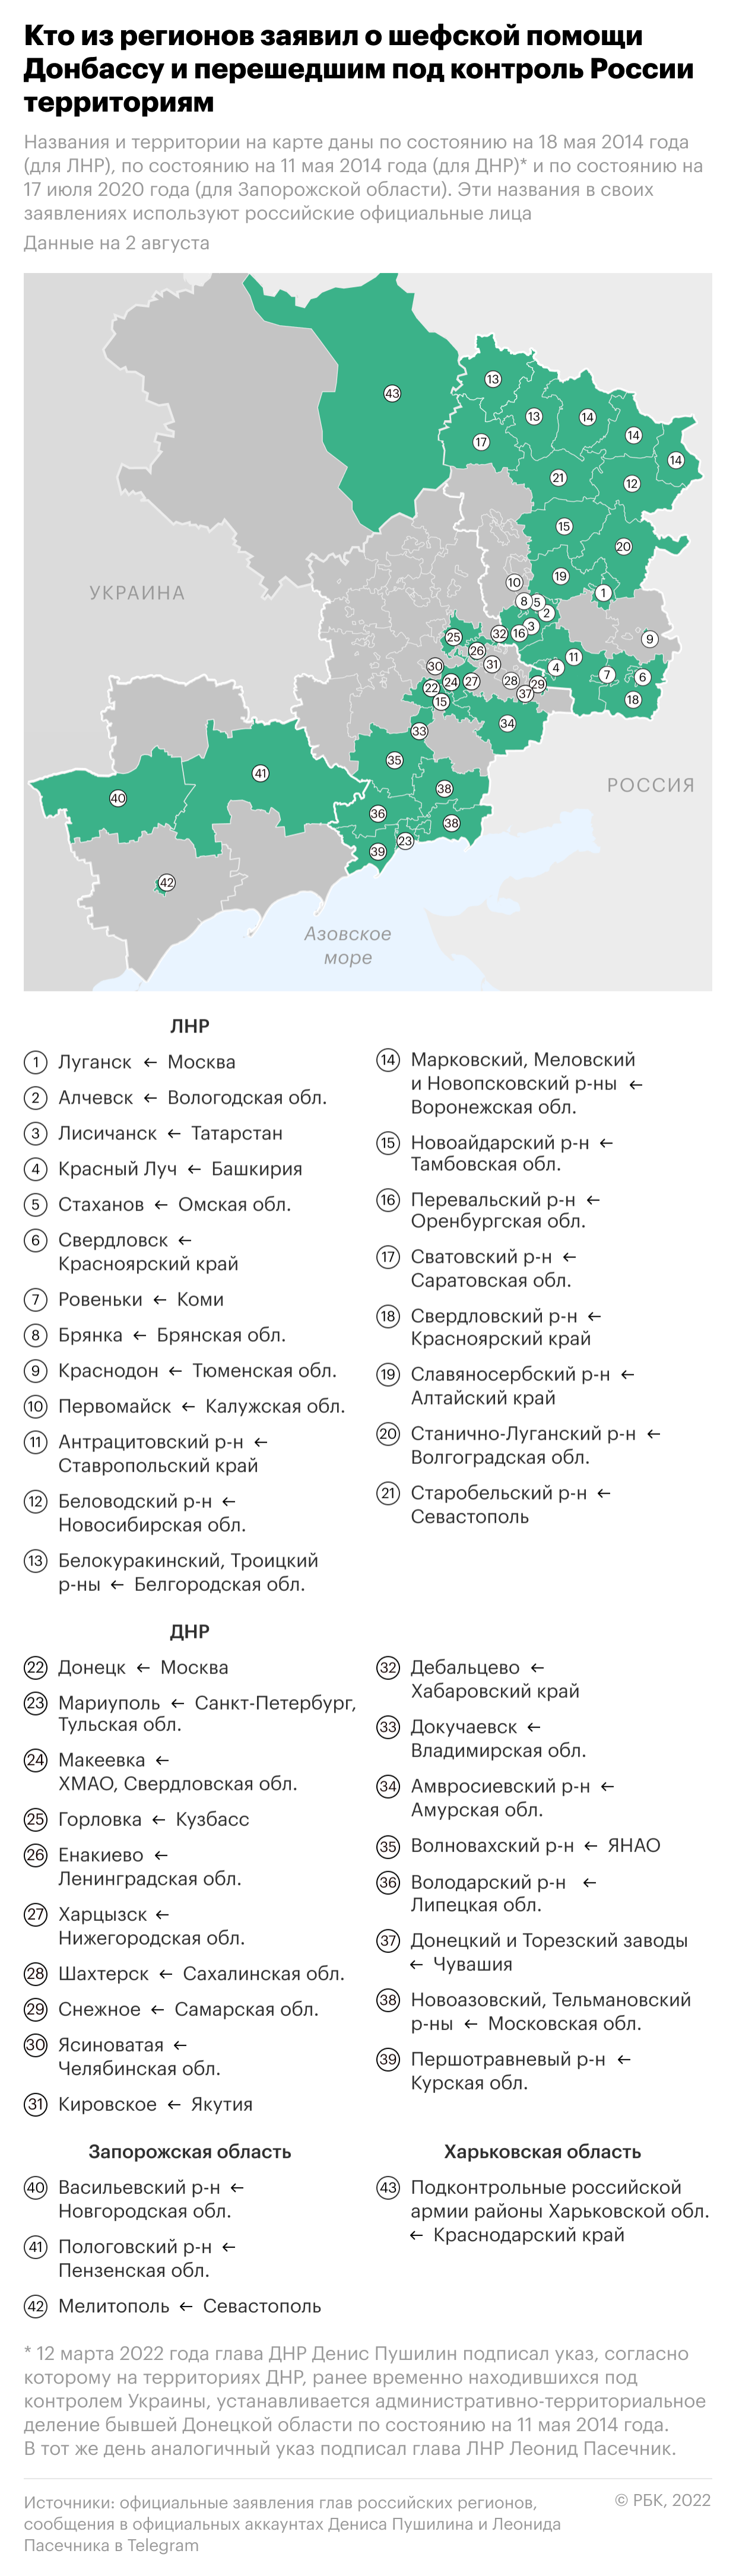 Более 40 регионов России взяли шефство над Донбассом. Инфографика